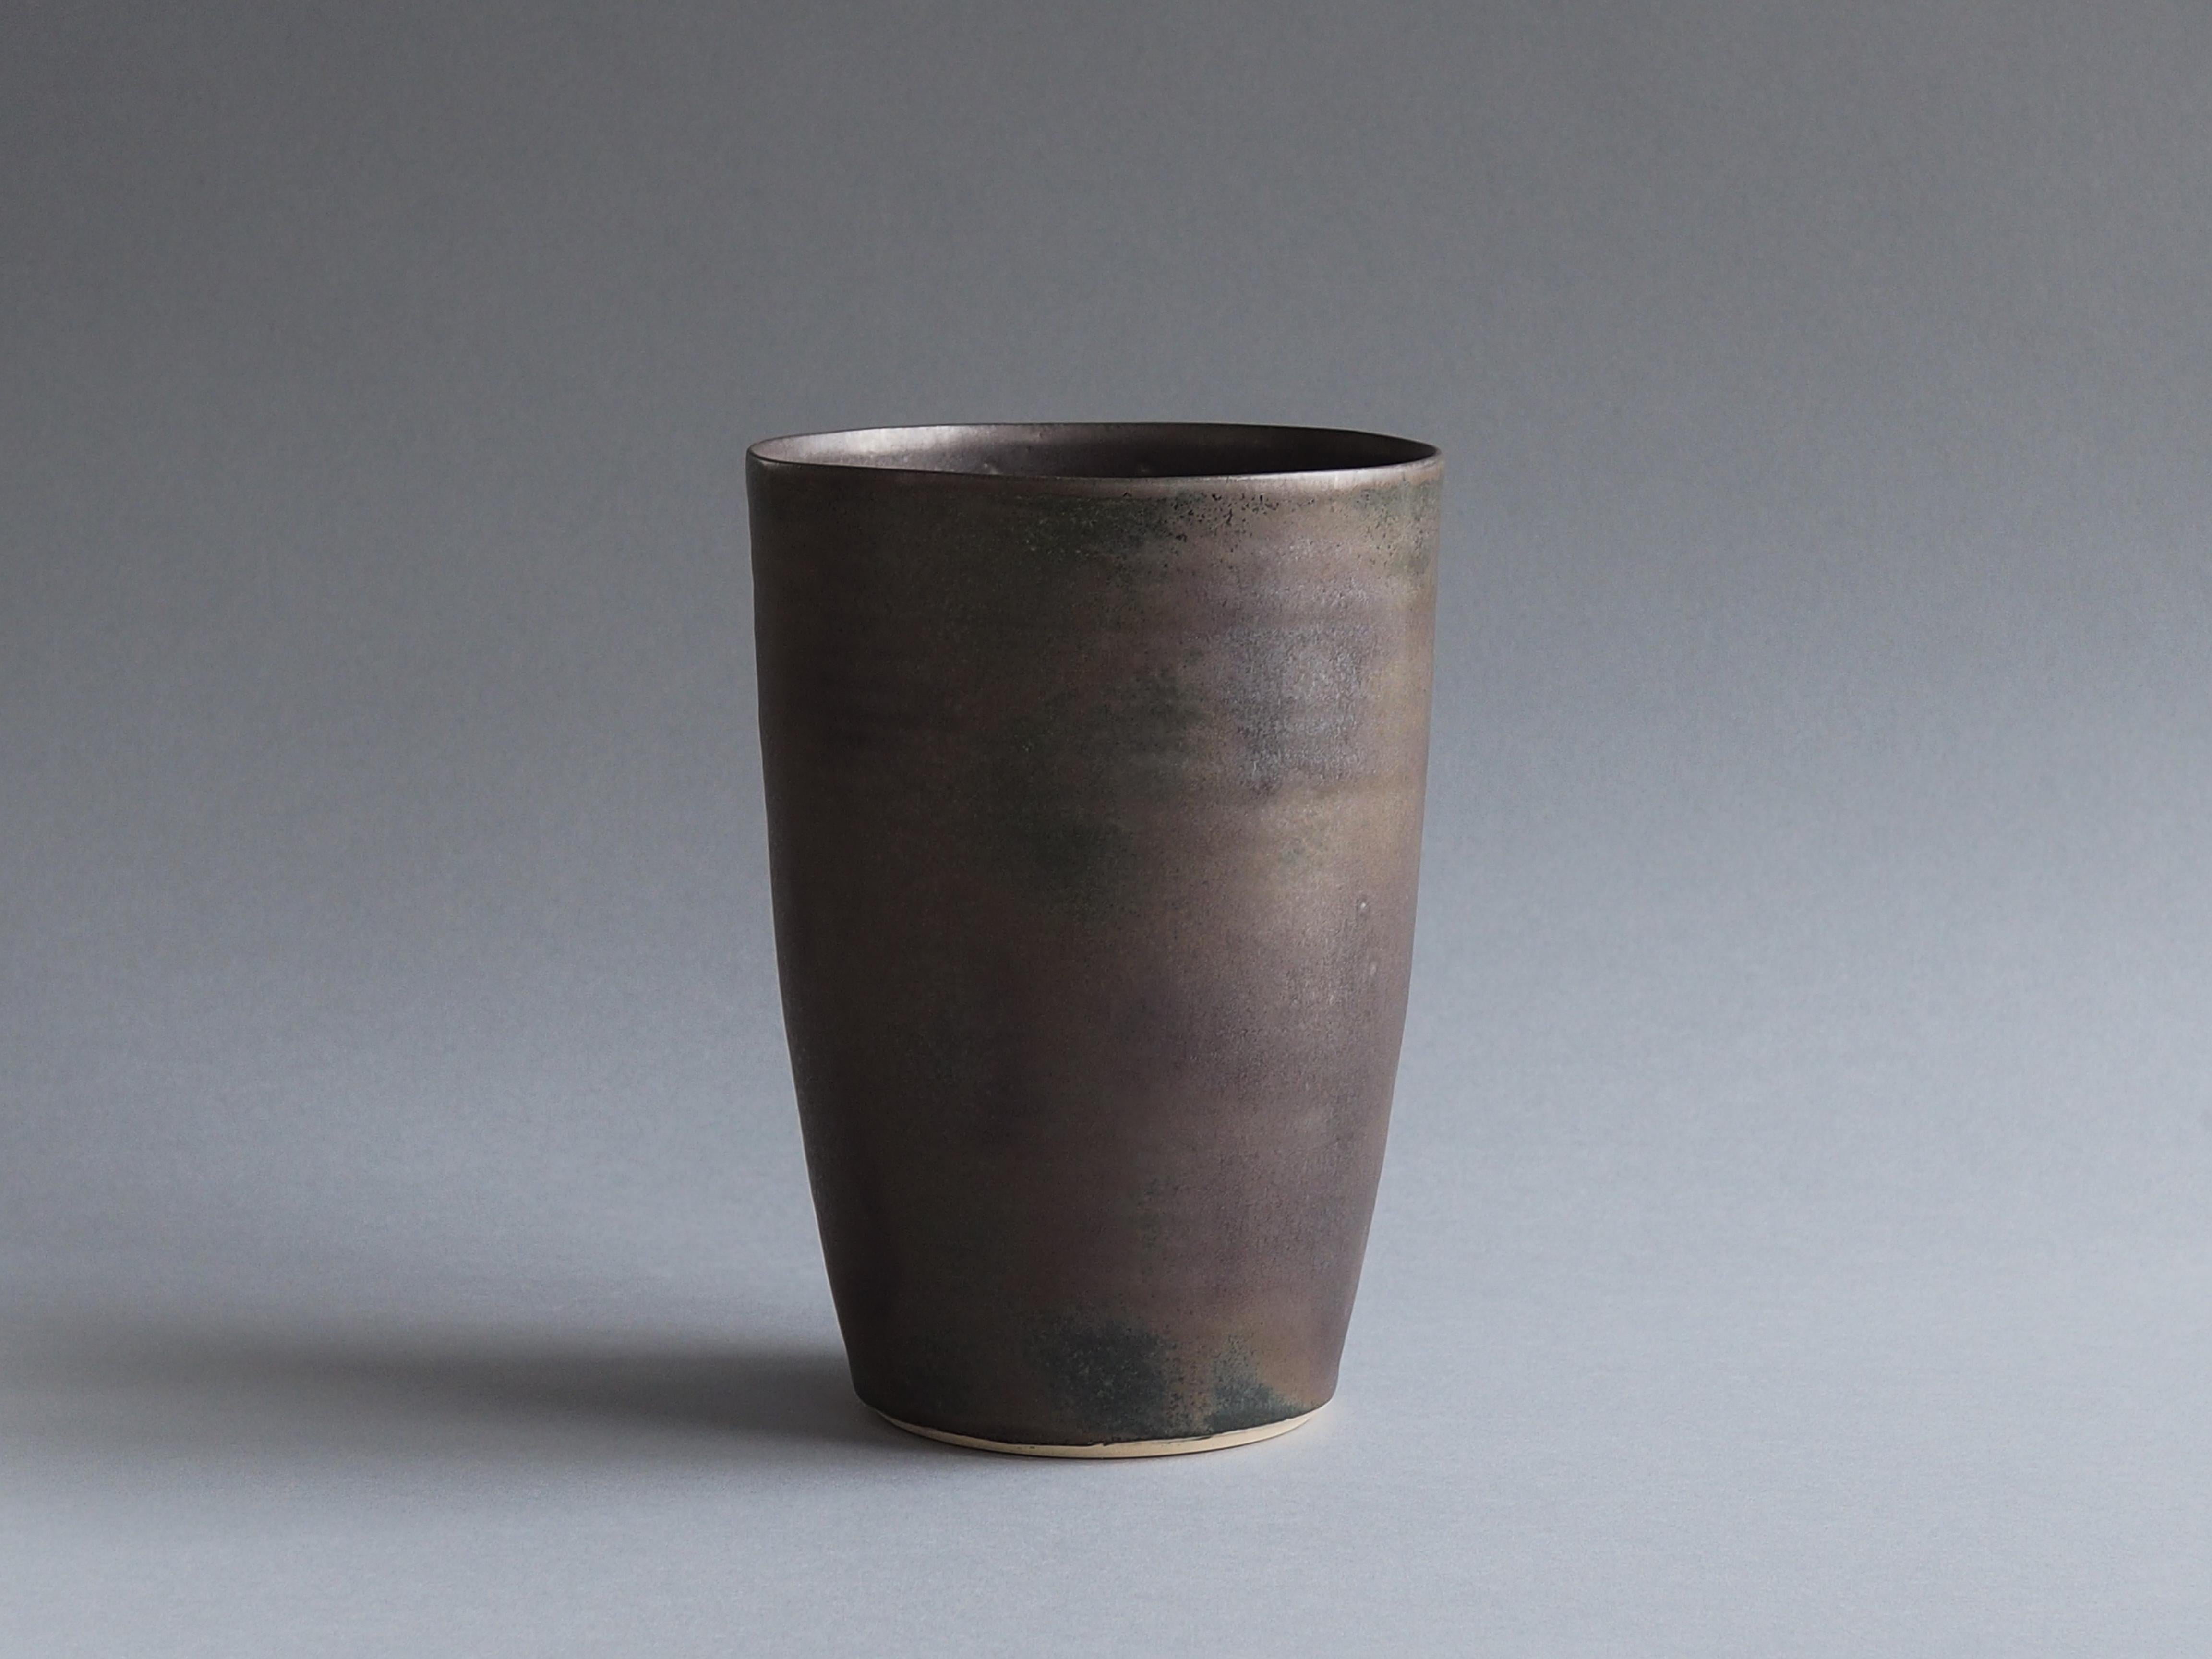 Minimalist Ceramic Vessel with Bronze Glaze by Tracie Hervy